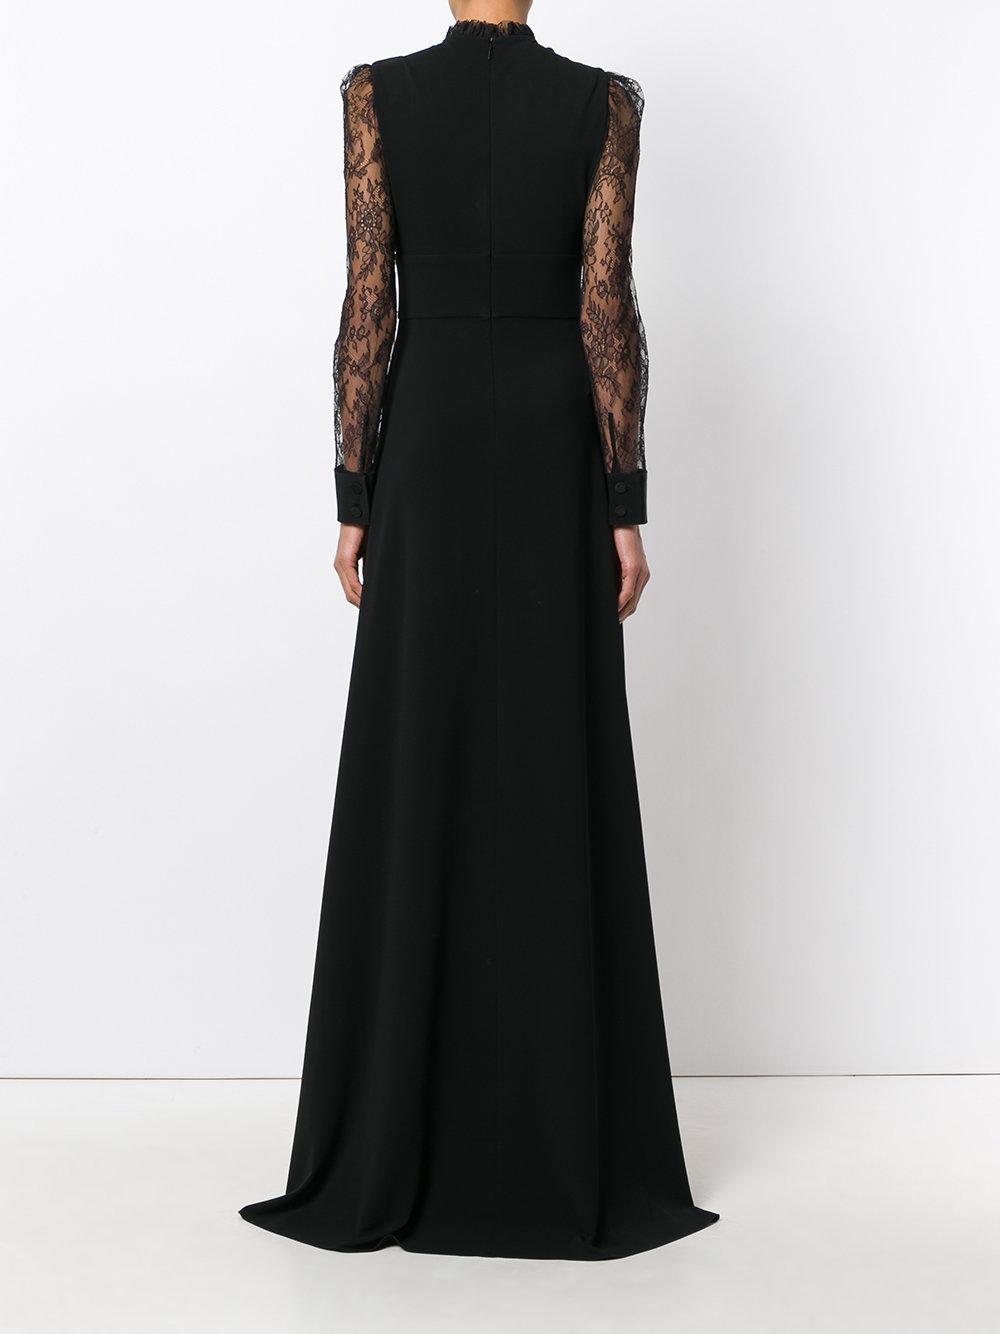 Gucci Silk Crystal Bow Dress in Black - Lyst